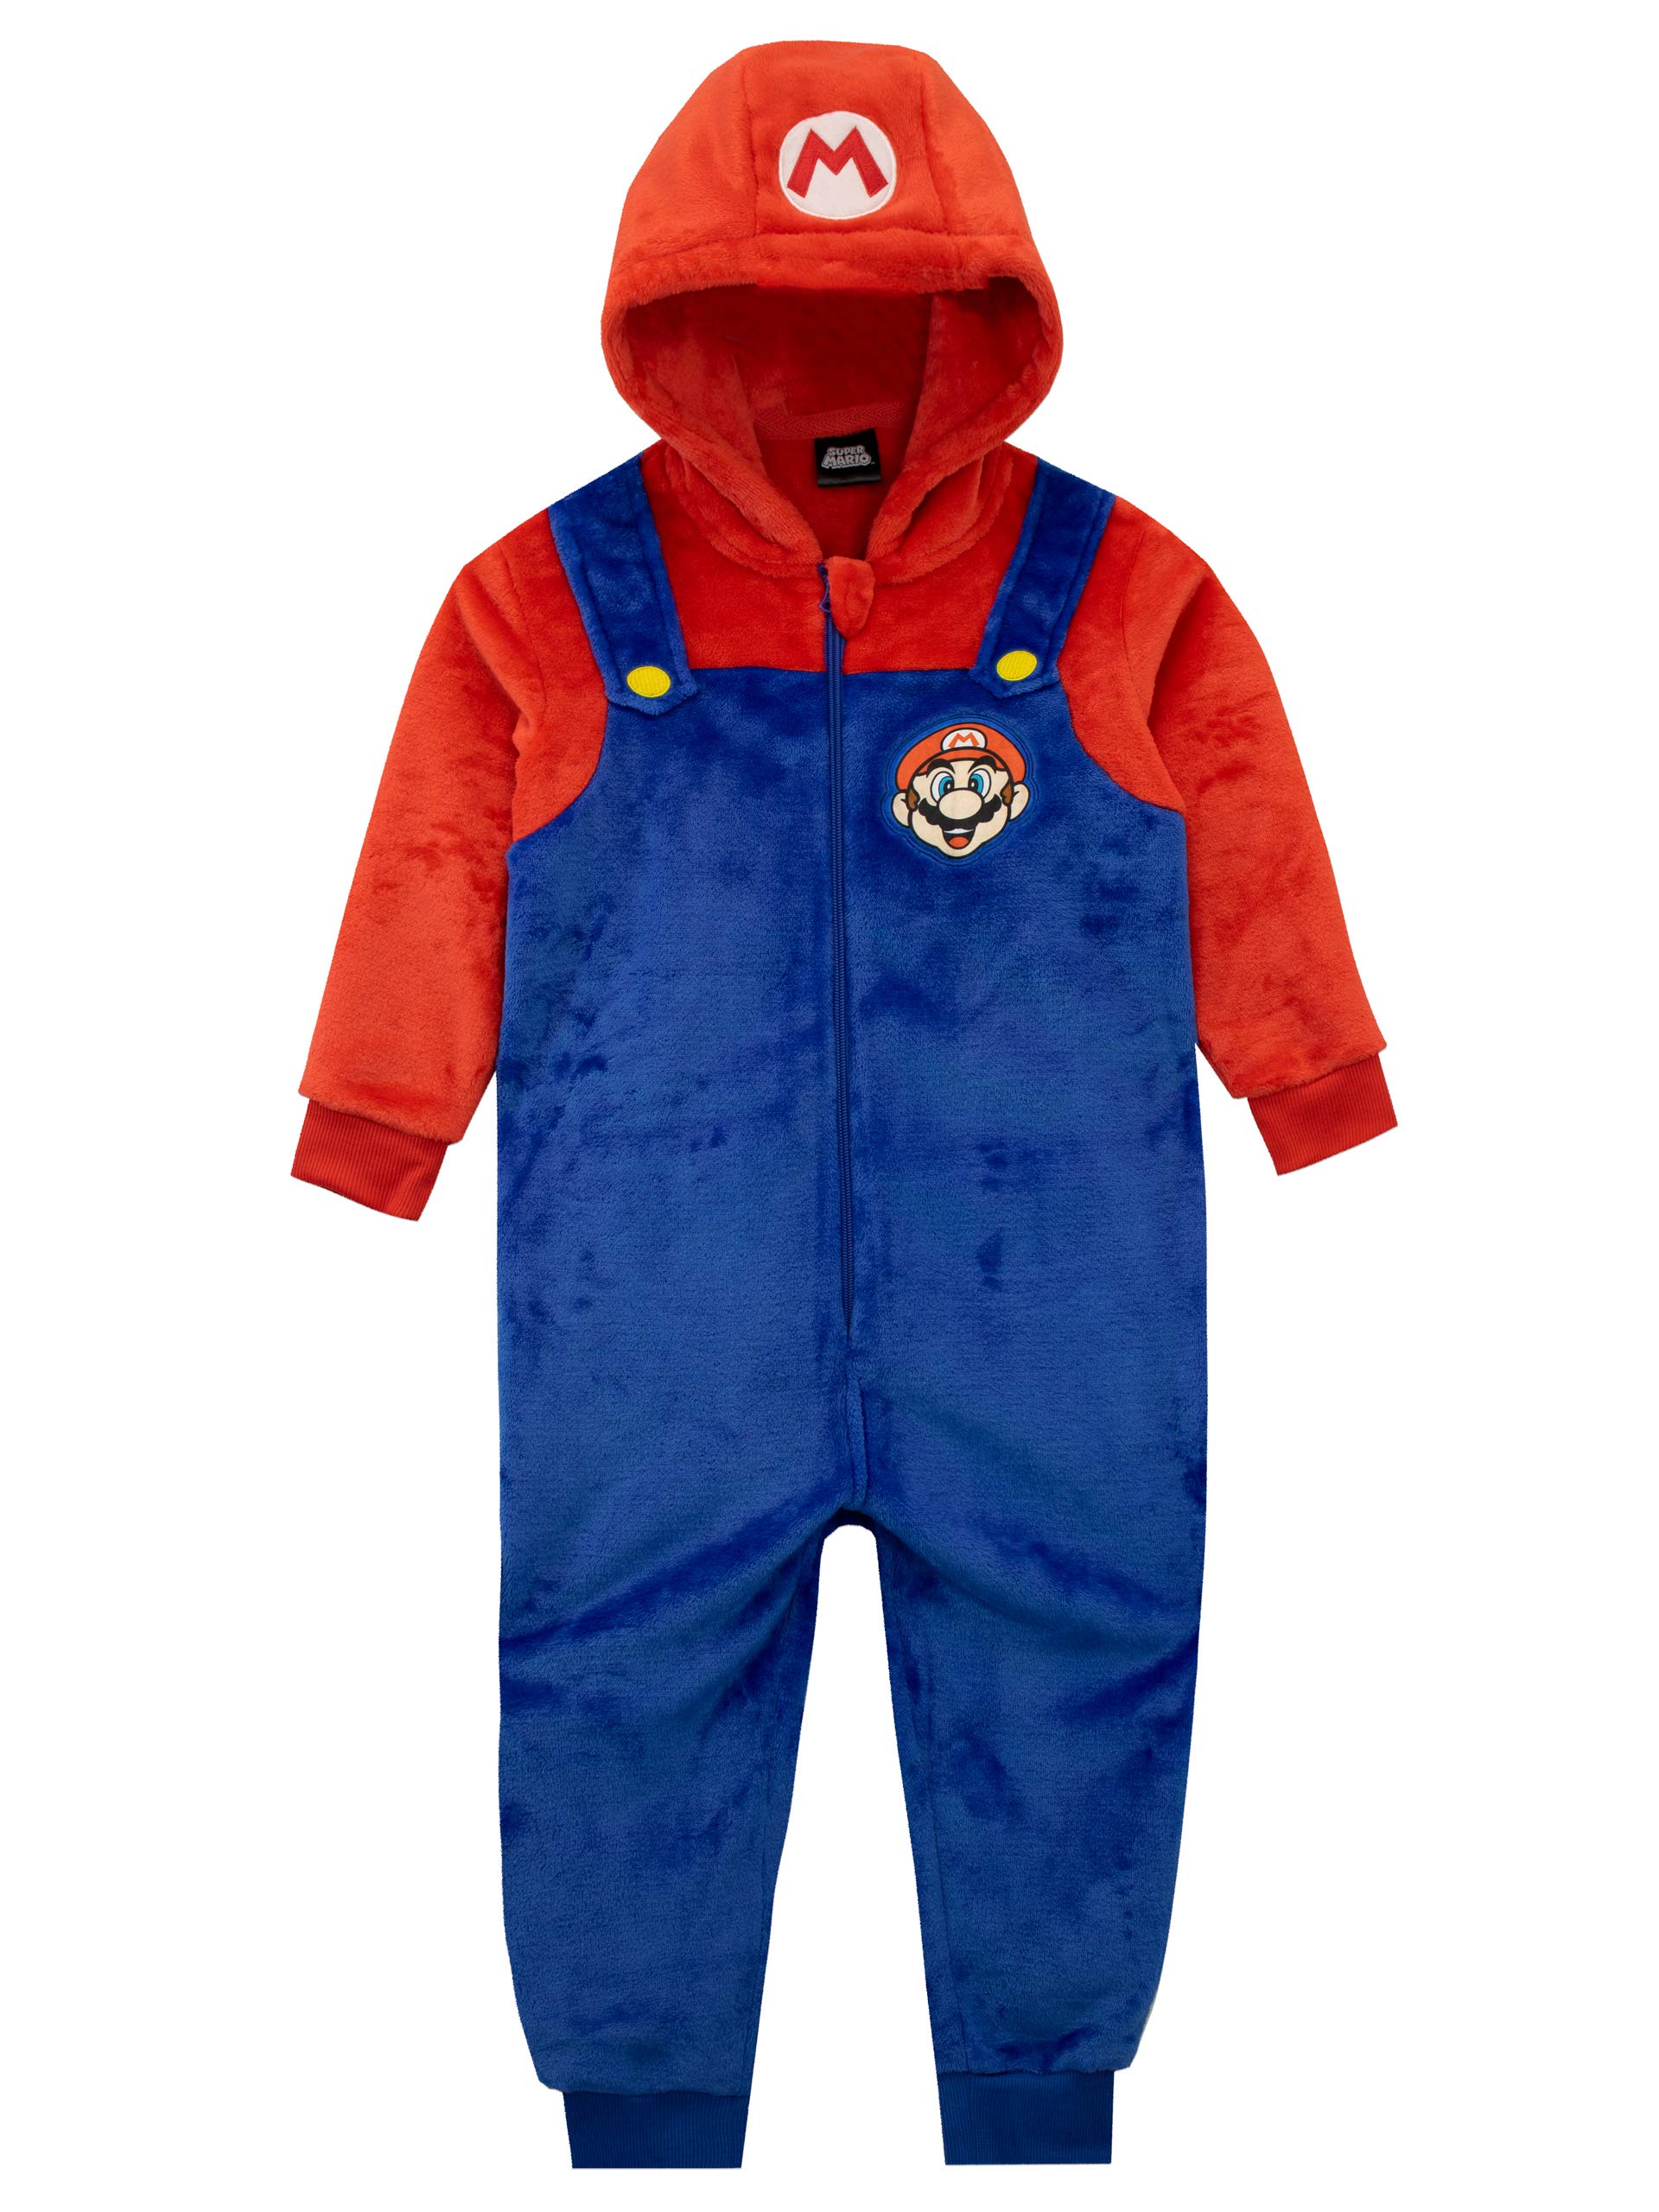 Exclusif Super Mario Surpyjama Garcon | Pyjama Combinaison Polaire | Pyjama Pilou Pilou pour Enfants jz4Wmk6xi en solde